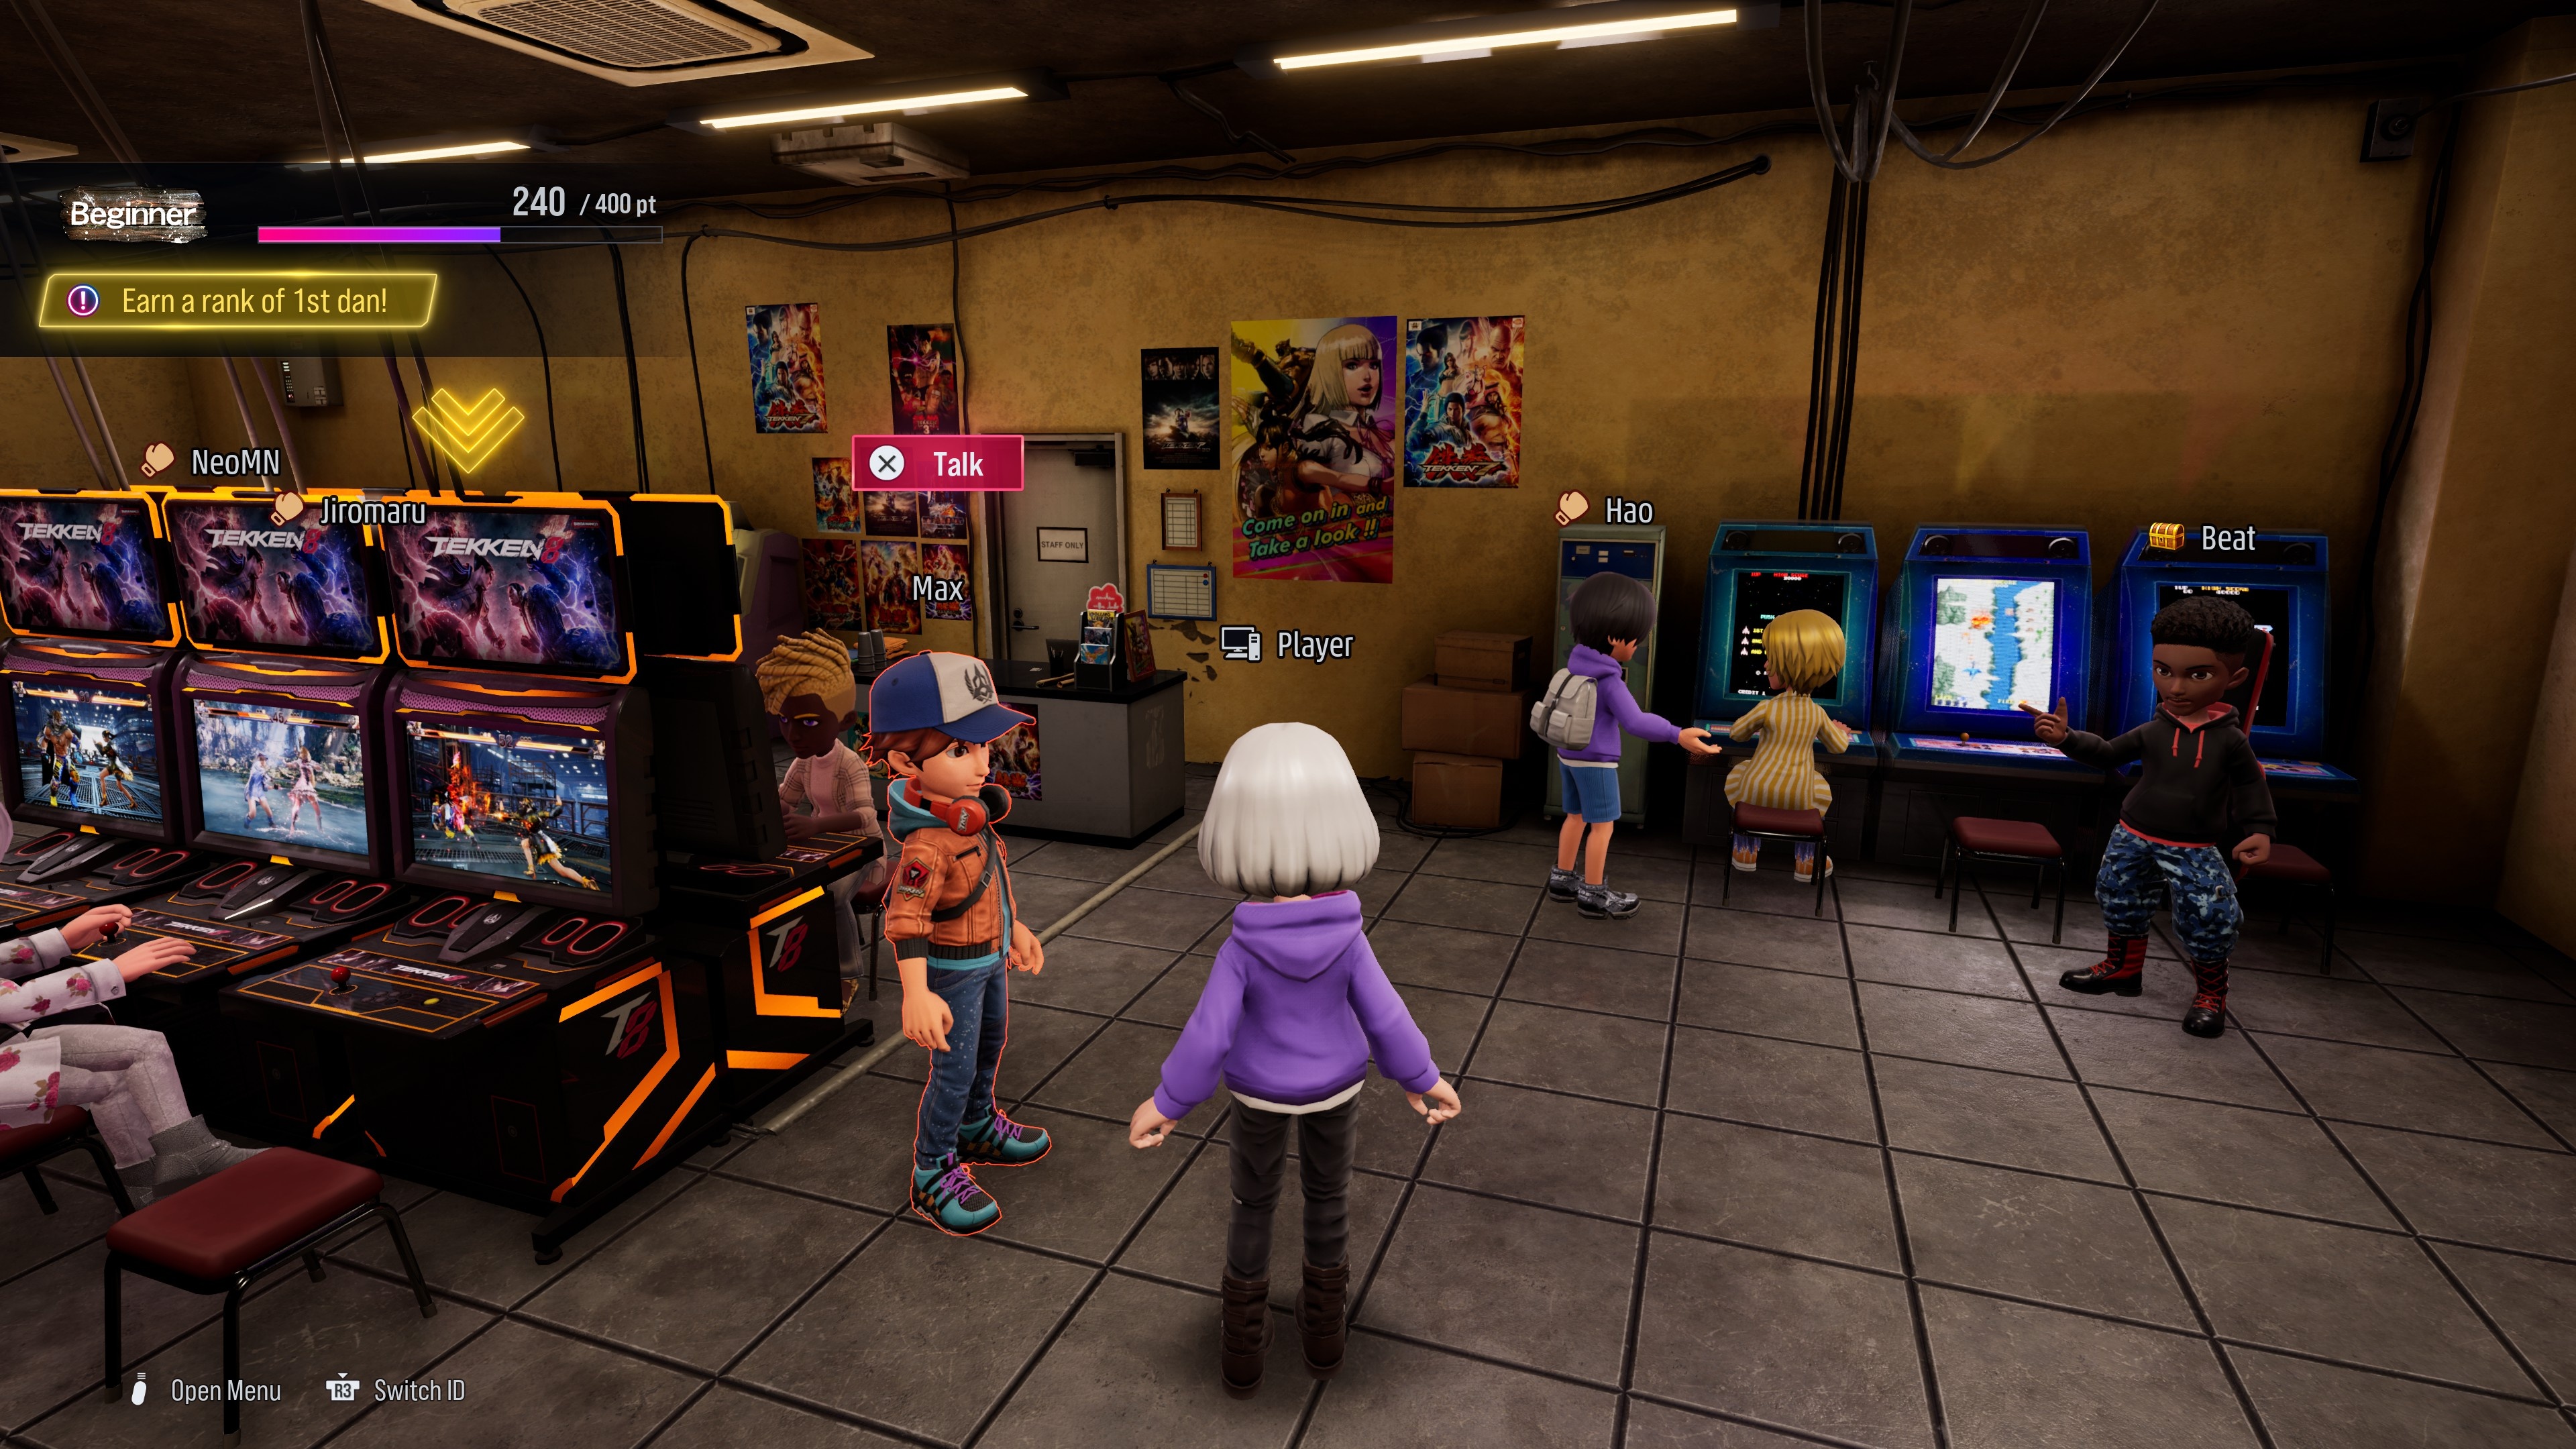 (Arcade Quest е съвсем нов режим на игра, в който можете да създадете аватар и да приключенствате с него във виртуална аркада, отделно от основната игра)